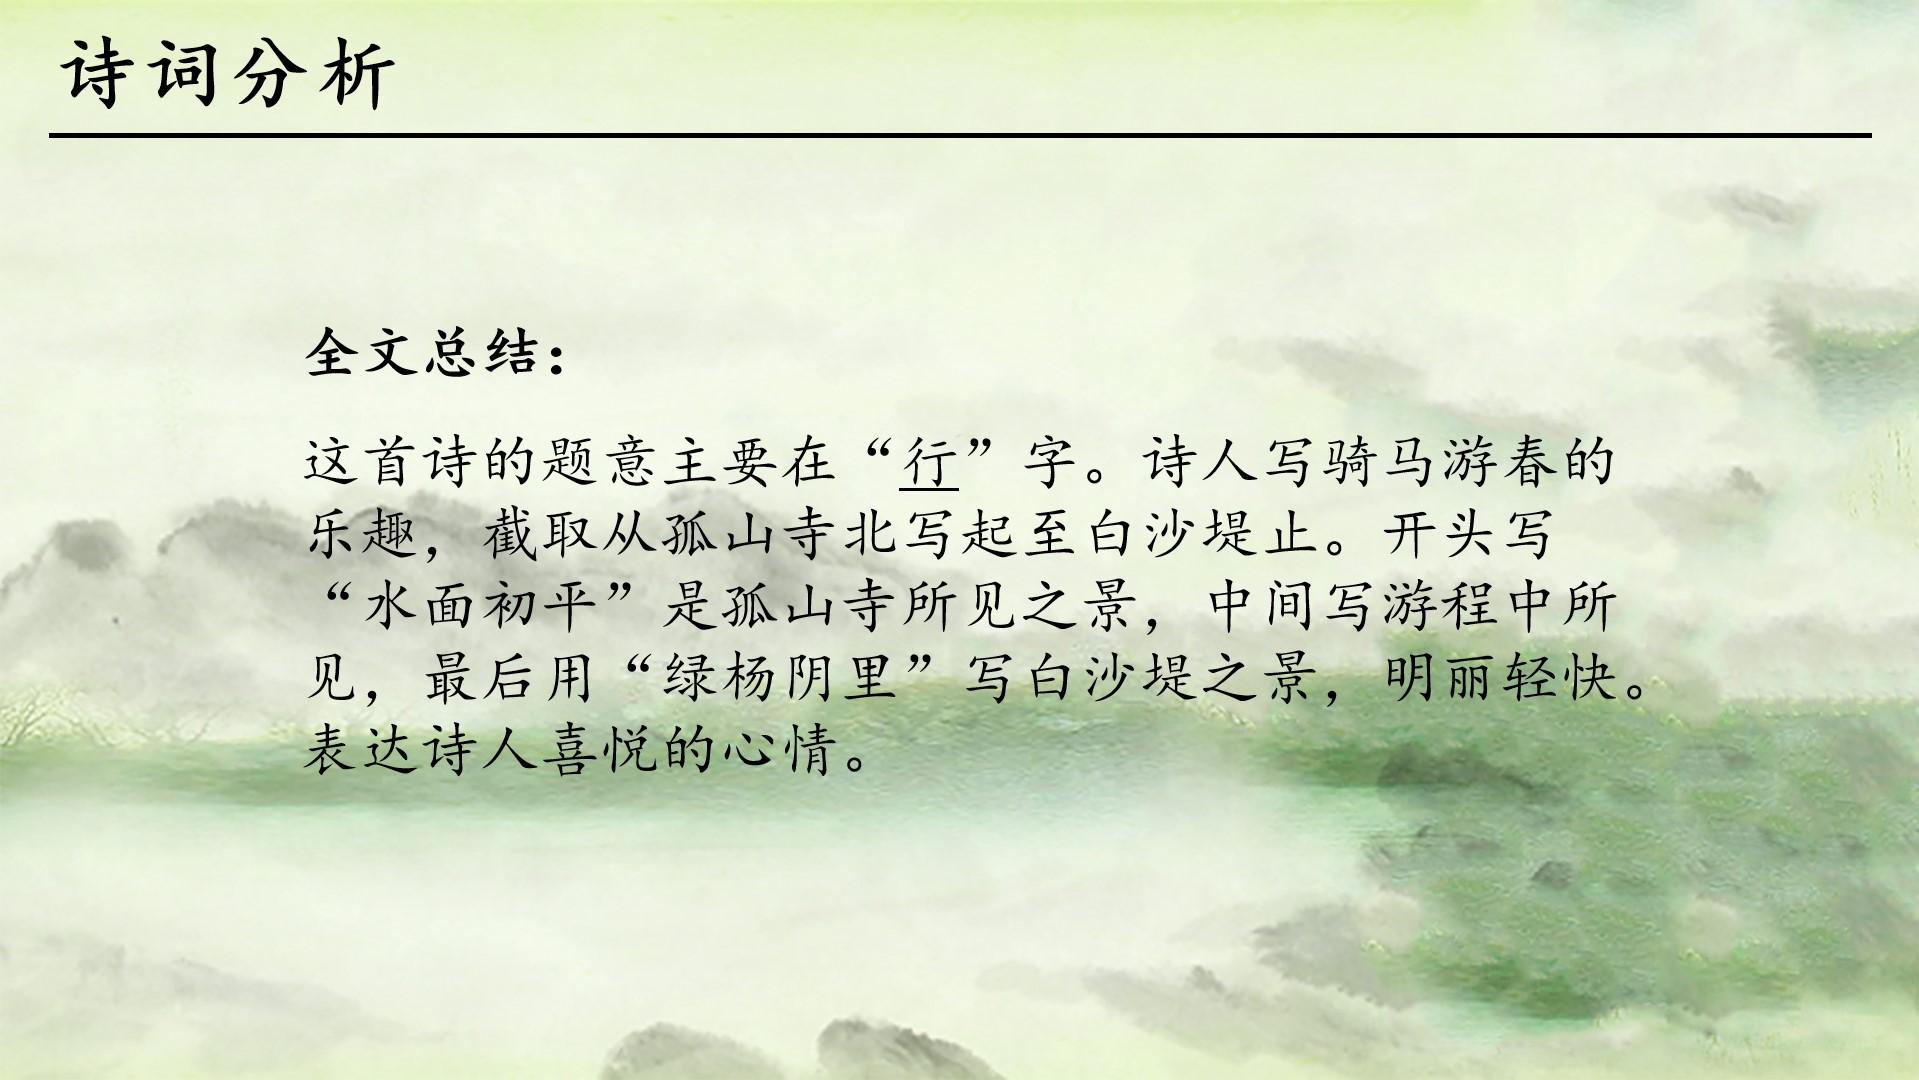 教育教学绿色黑色白色中国风诗人沙堤孤山骑马游程云素材PPT模板1672564896017